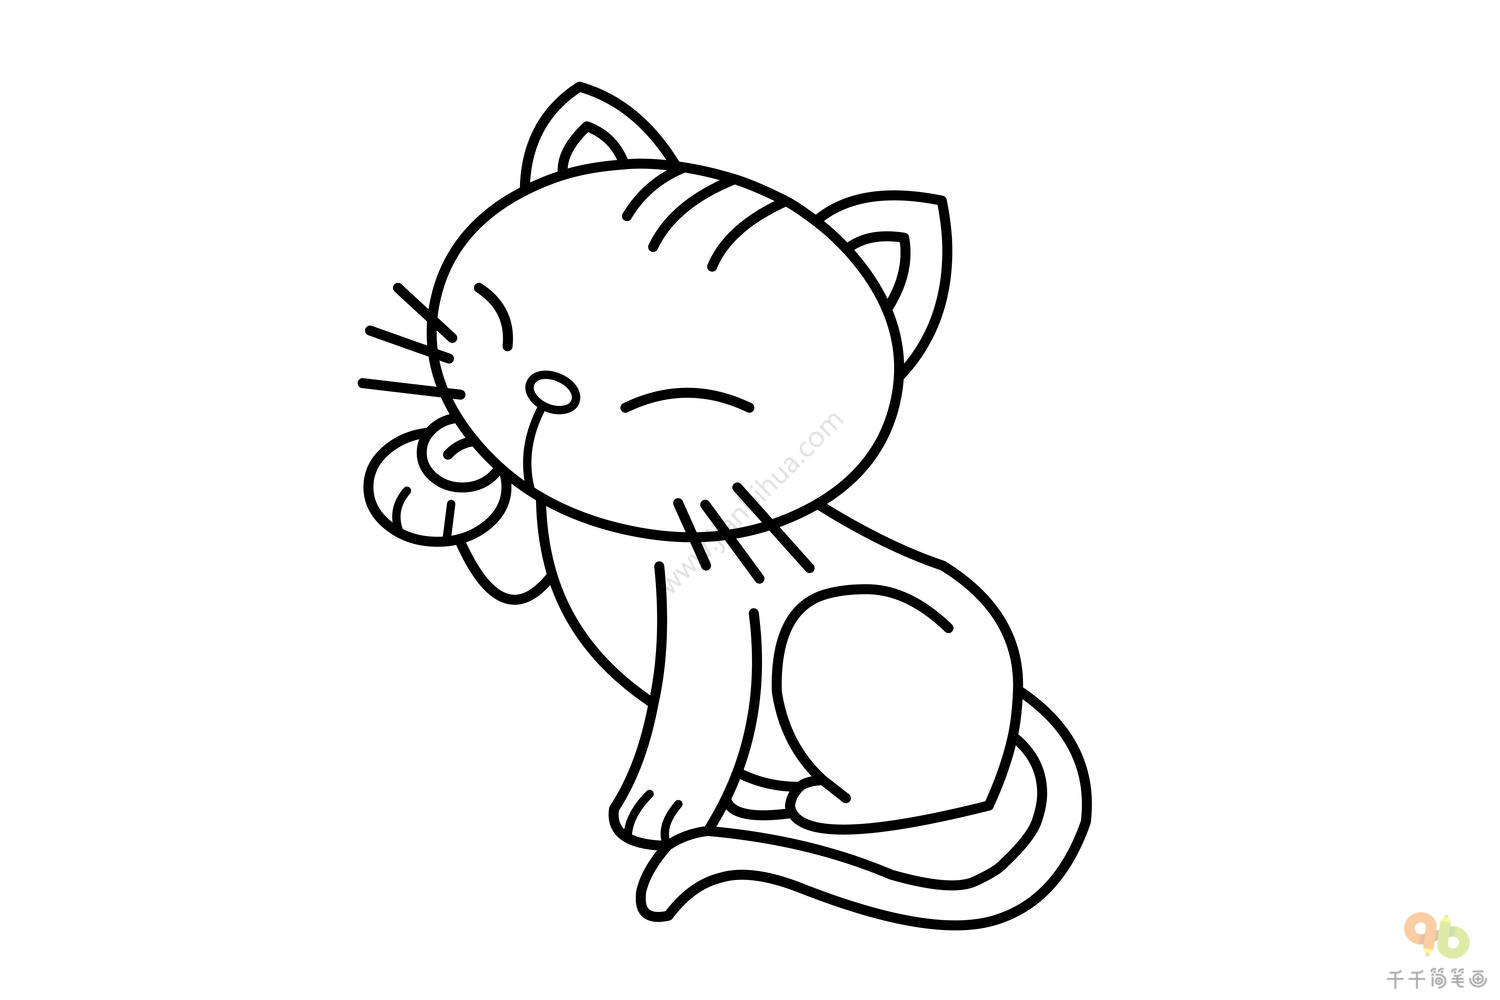 橘色小猫简笔画步骤图橘色小猫简笔画步骤图猫和老鼠简笔画图片猫和